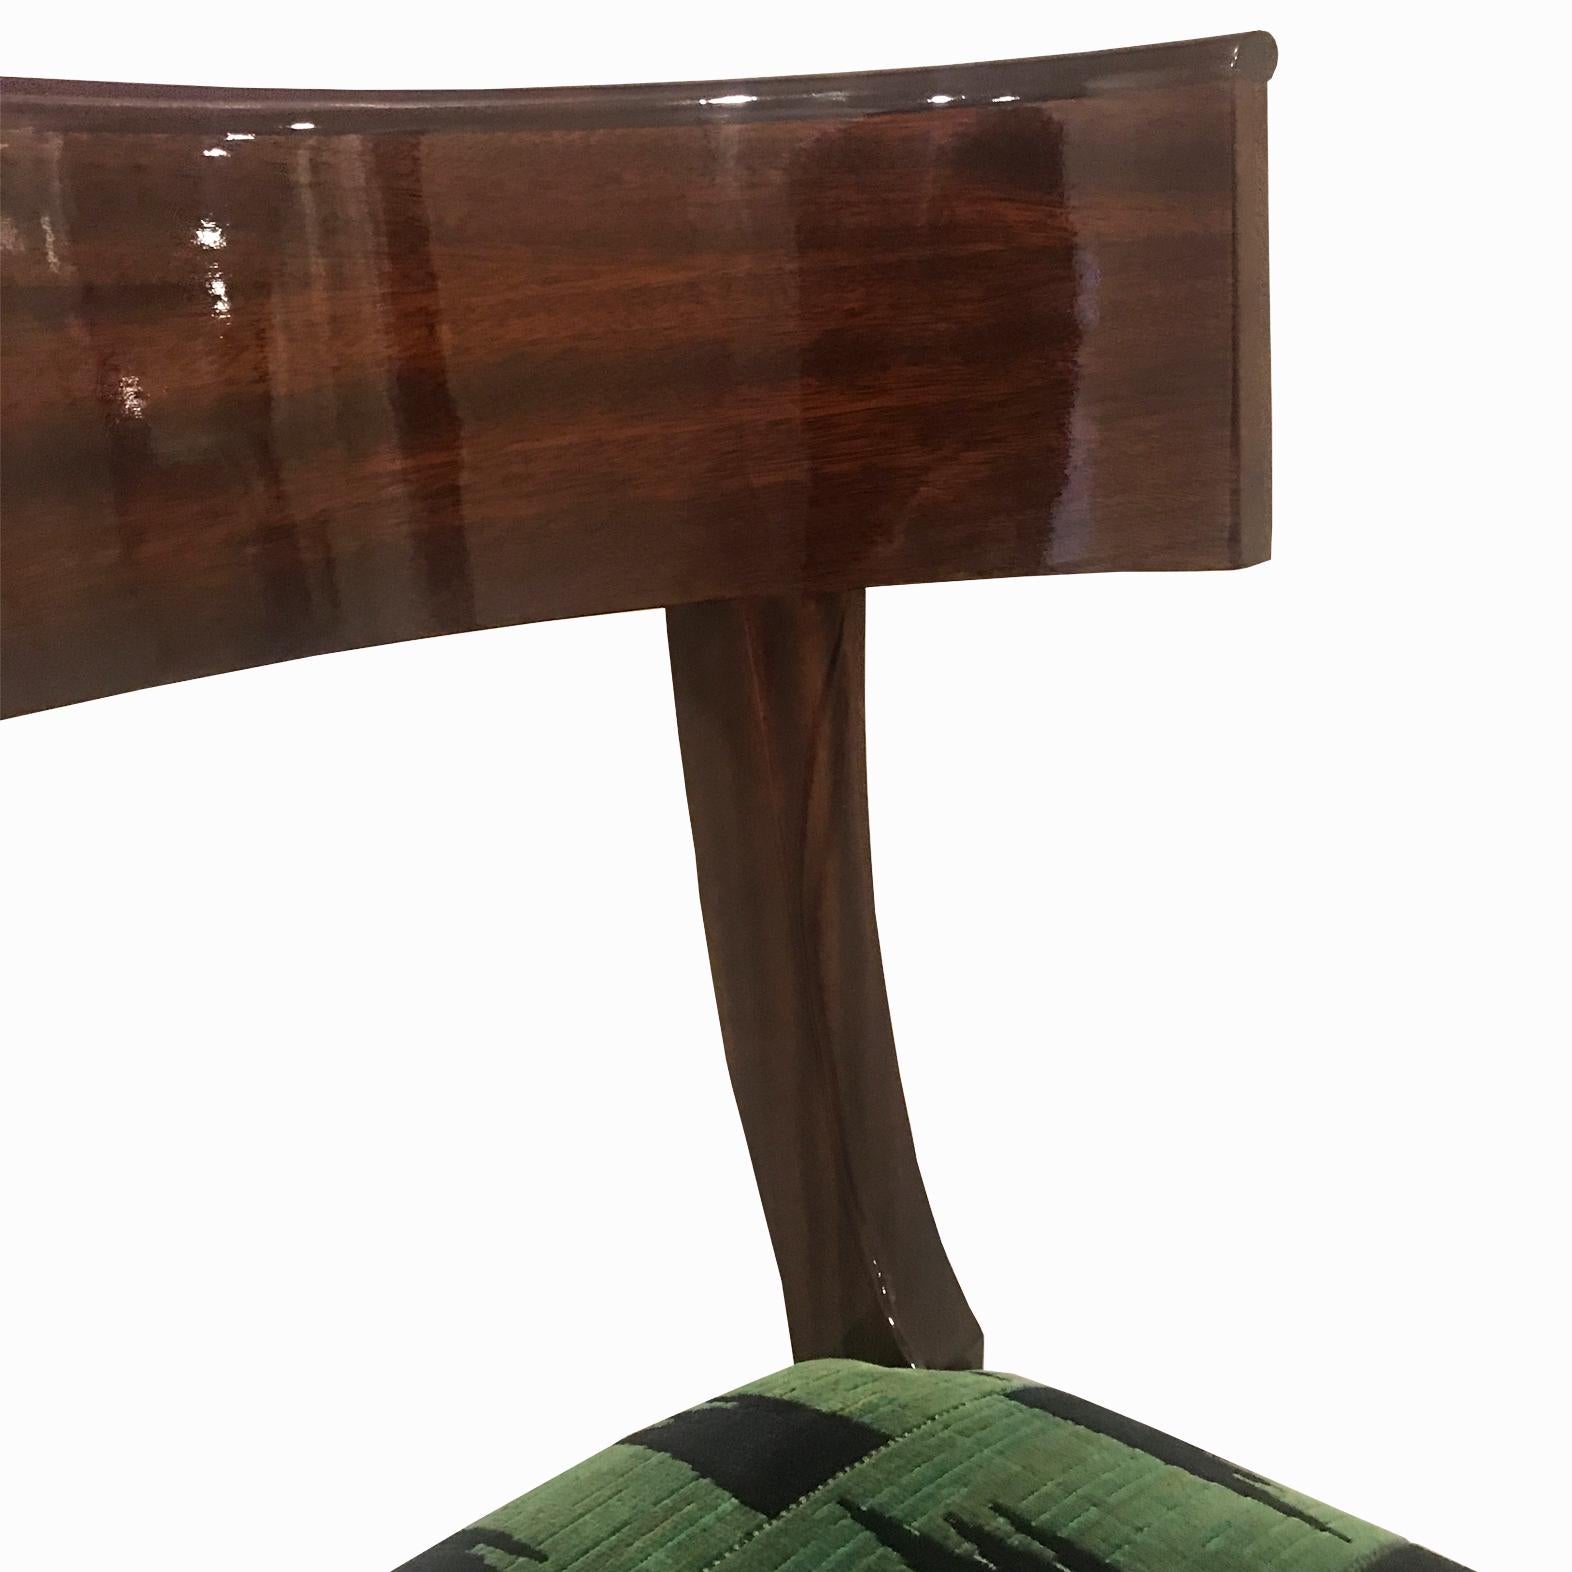 Neue Produktion. Auf Bestellung in Nussbaum oder Mahagoni gefertigt. Jeder Stuhl wird in NYC entworfen und hergestellt und hat einzigartige Eigenschaften. Eintägige Lieferung in NYC möglich. Unser Lieblingsstuhl. Bei mehr als 4 Stühlen wird der